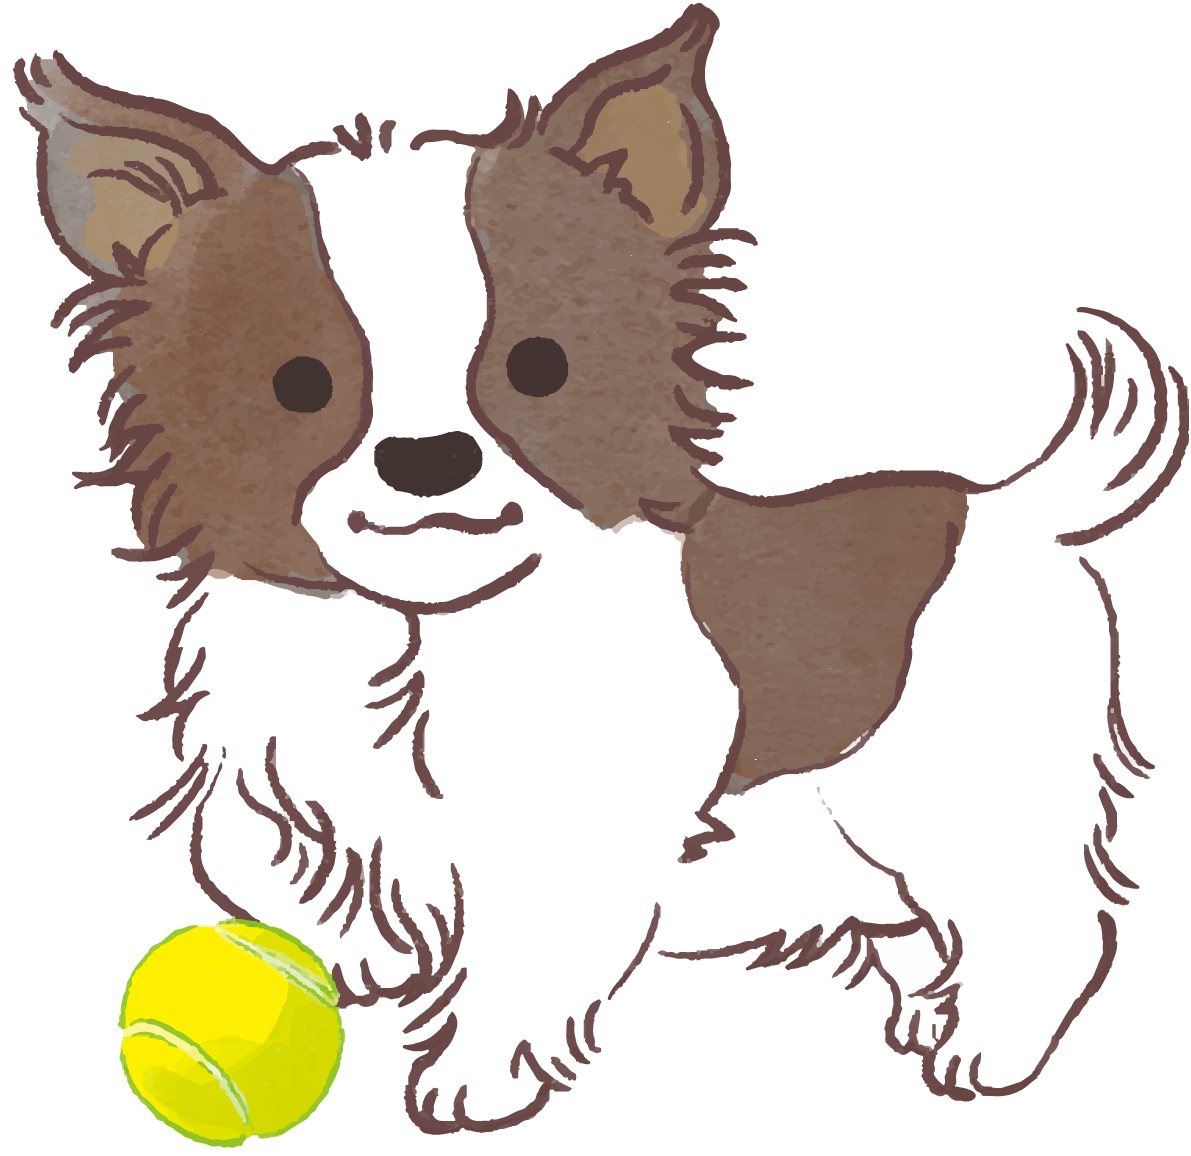 パピヨン子犬 ボールで遊ぶ かわいい犬 イラスト素材 超多くの無料かわいいイラスト素材